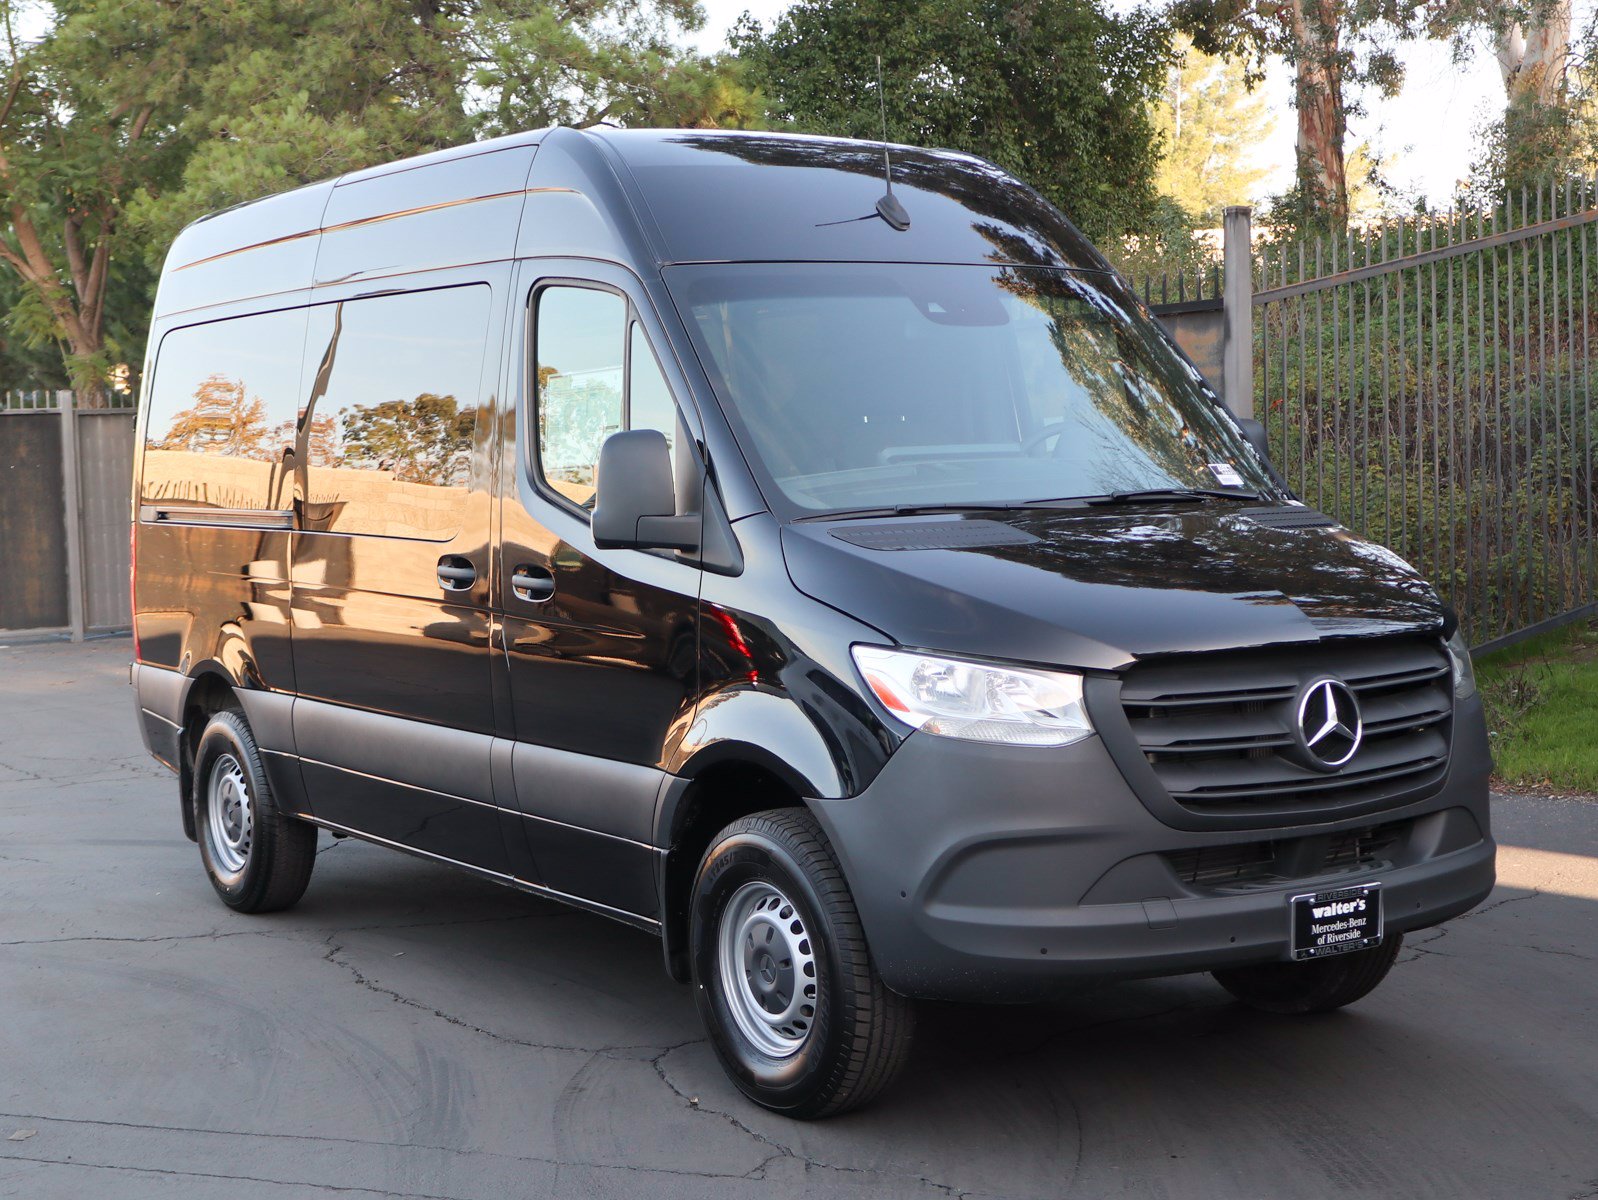 New 2019 Mercedes-Benz Sprinter 1500 Cargo Van Full-Size Cargo Van in ...